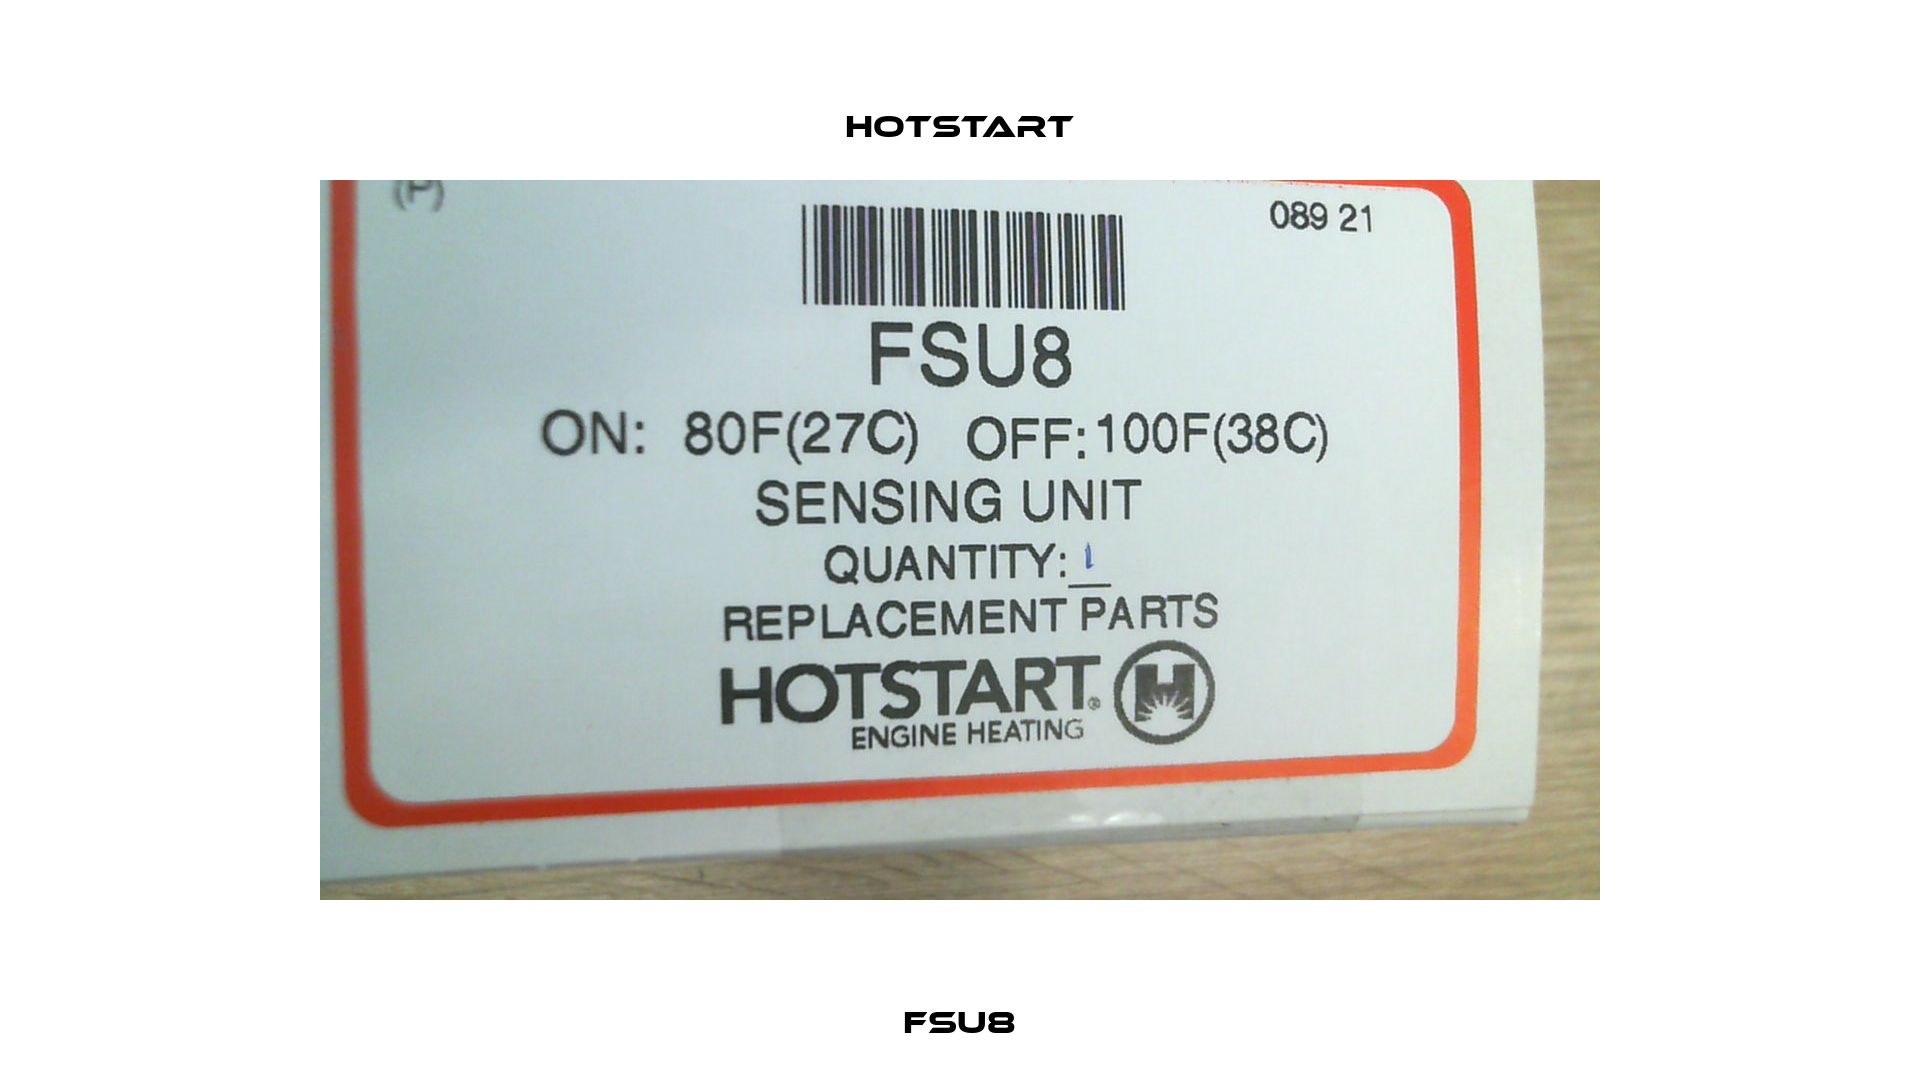 FSU8 Hotstart